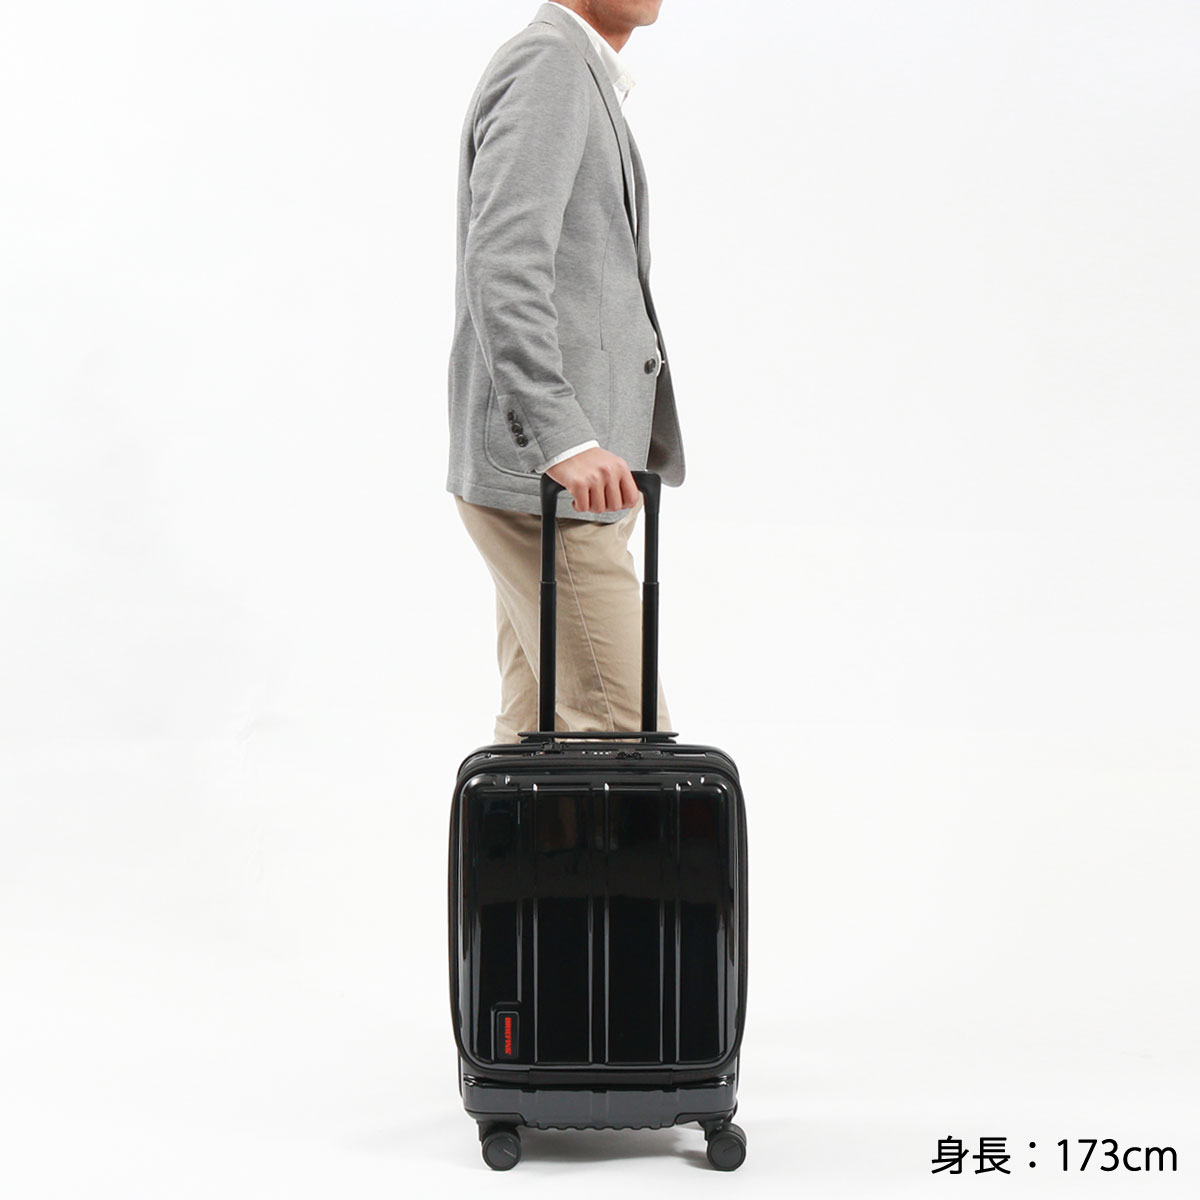 日本正規品 ブリーフィング スーツケース 機内持ち込み S Sサイズ 34L 